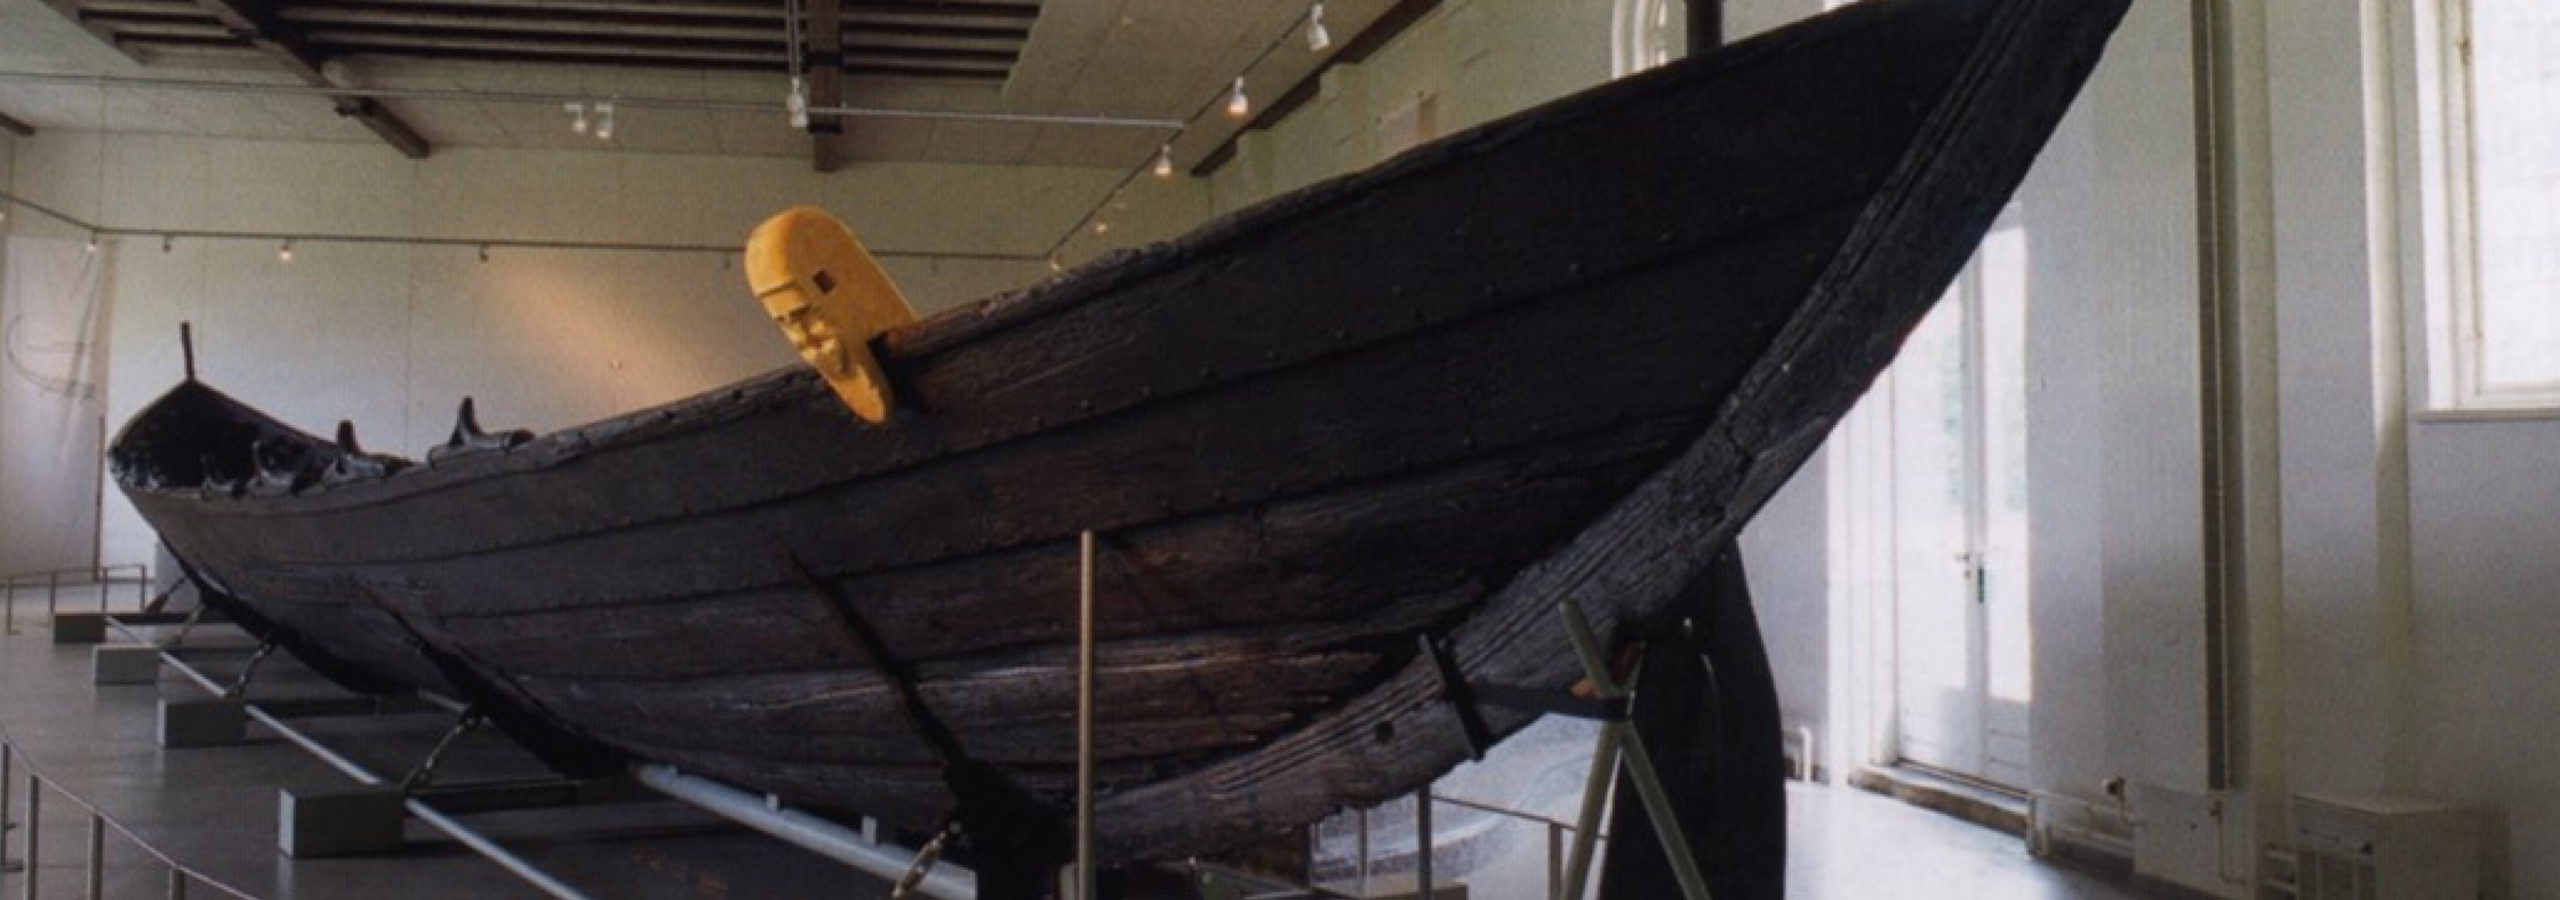 FOREDRAG: Sønderjyllands søfart i oldtiden